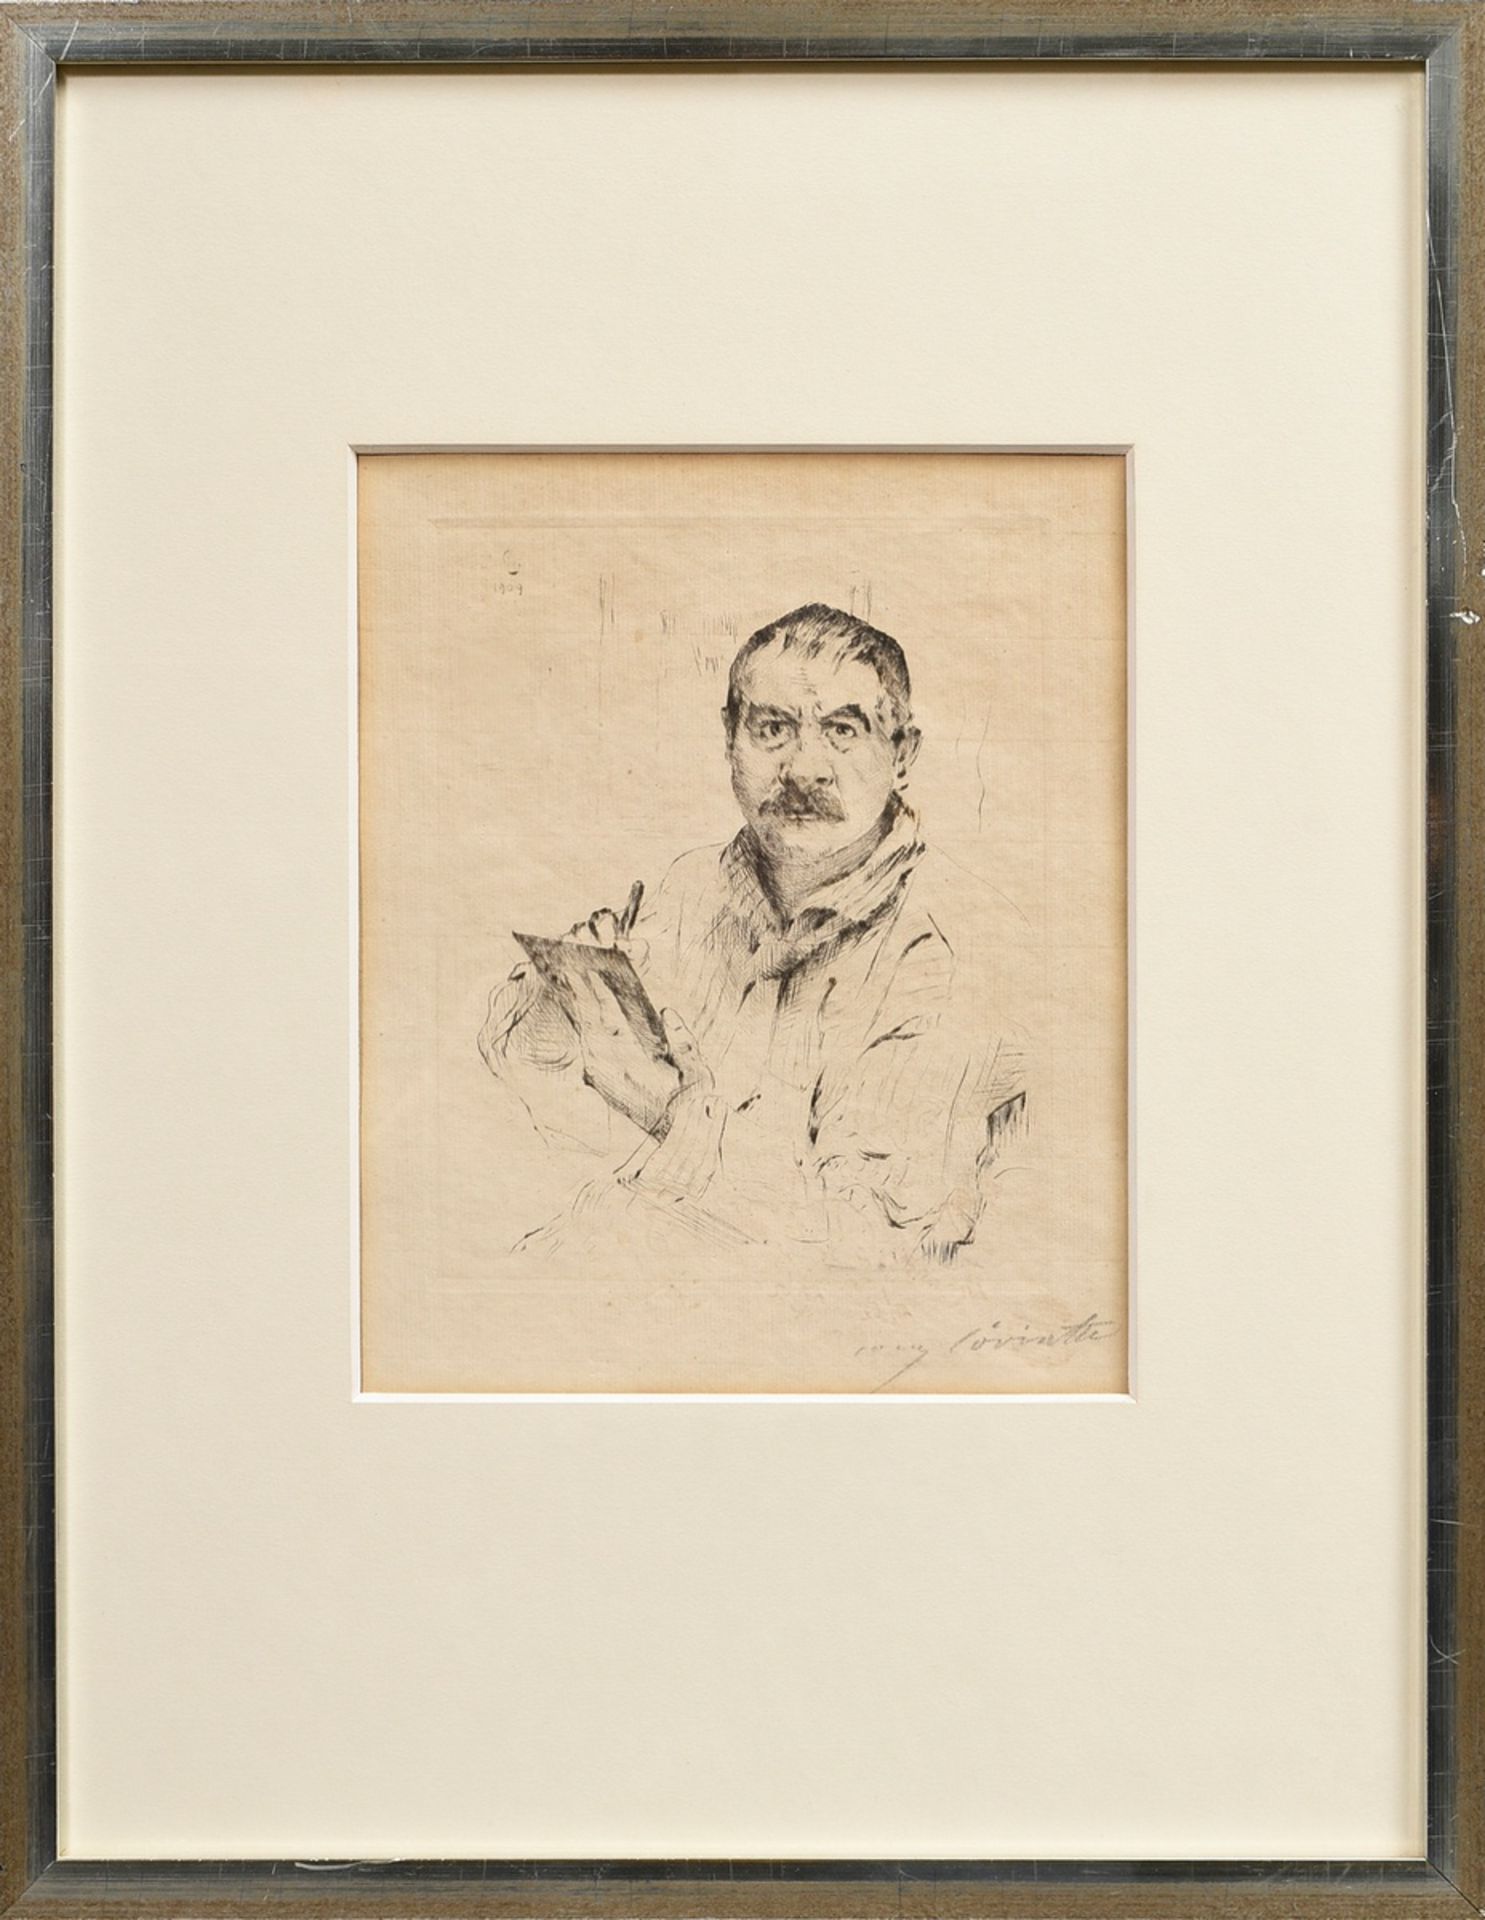 Corinth, Lovis (1858-1925) "Selbstbildnis radierend" 1909, Radierung, u.r. sign., PM 19,5x15,5cm, B - Bild 2 aus 4